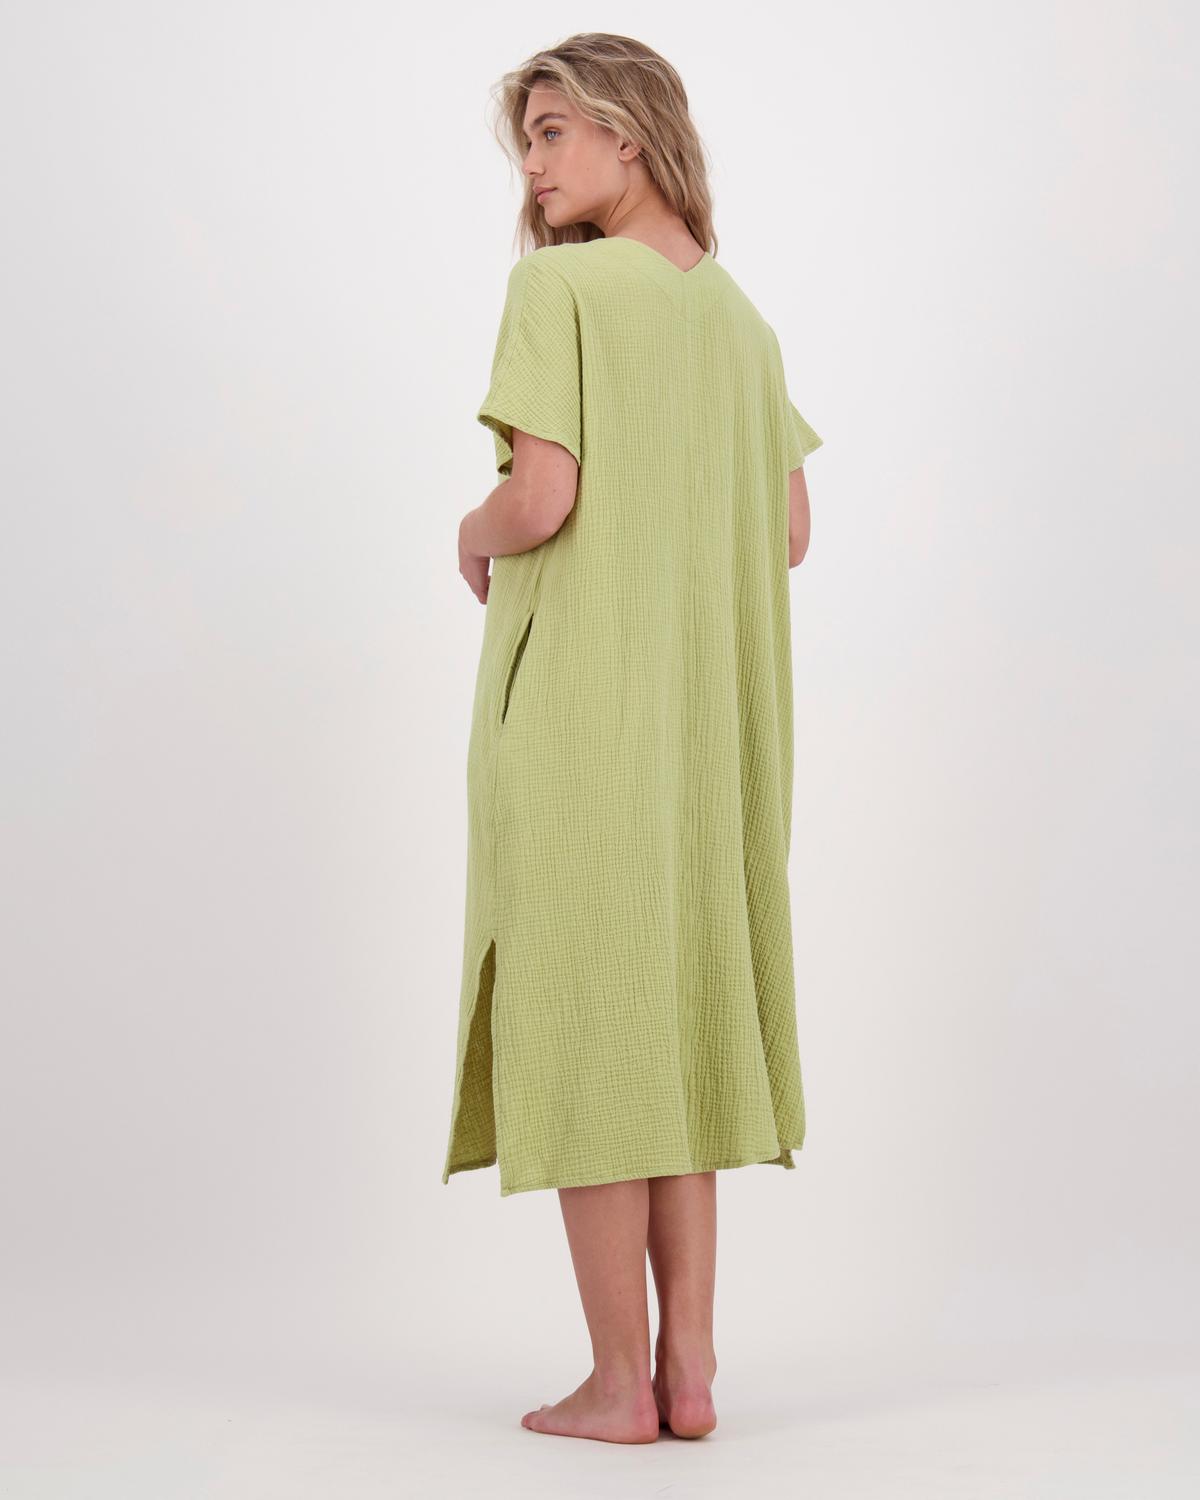 Emmy Lou Loungewear Dress -  avocado